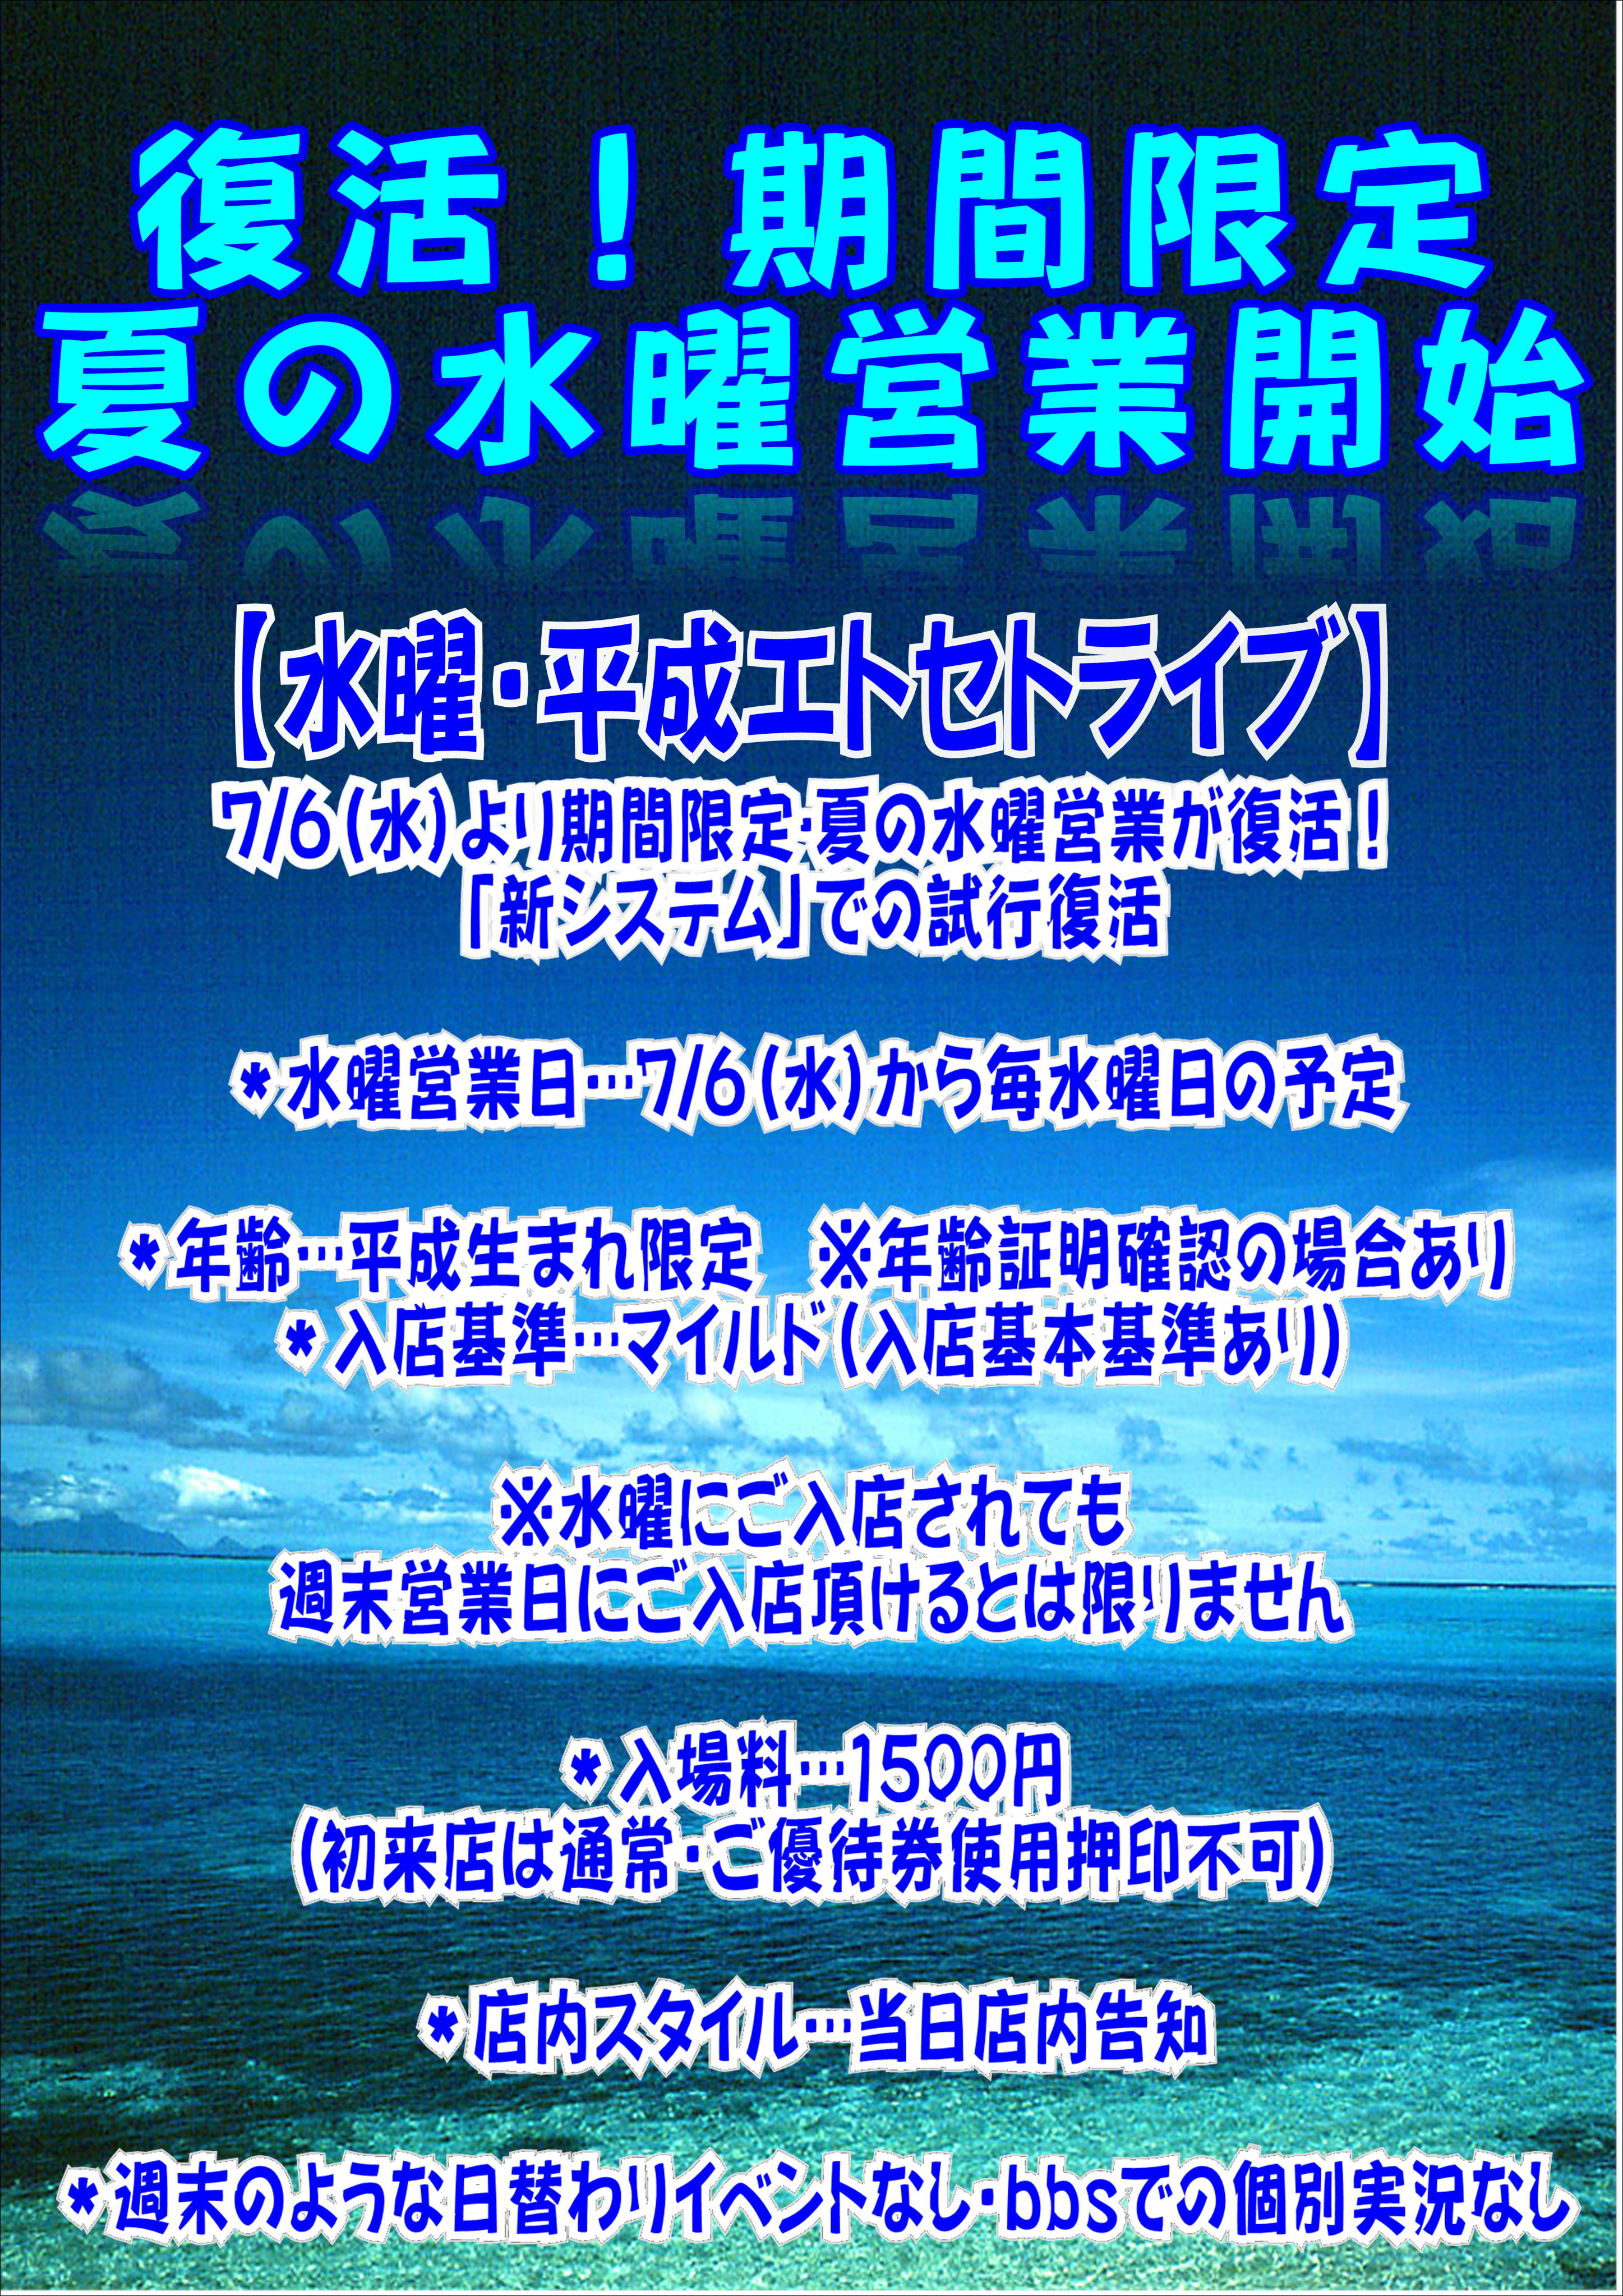 8/3(水)夏の水曜営業・平成エトセトライブ